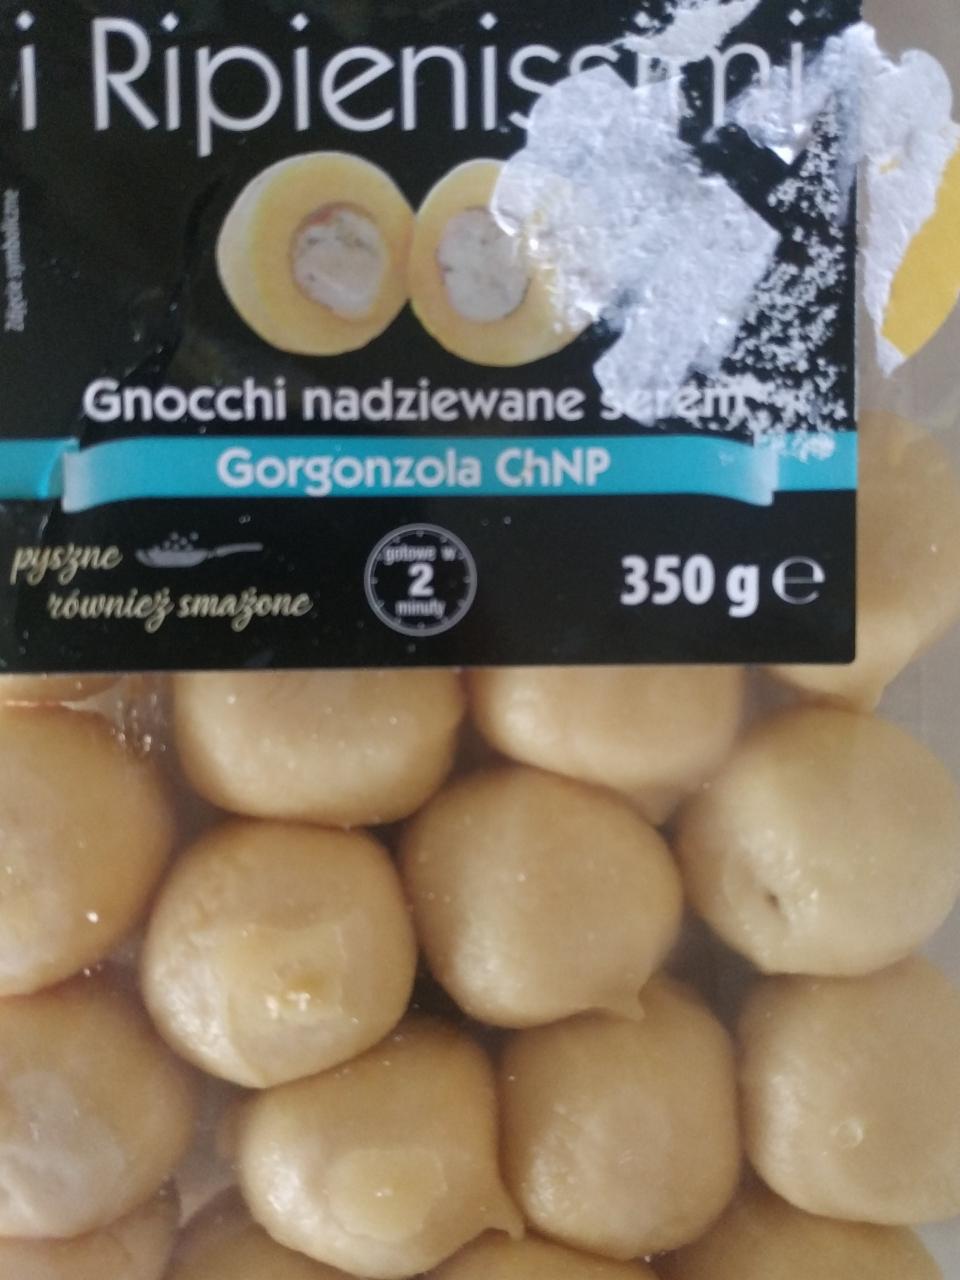 Zdjęcia - Gnocchi nadziewane serem gorgonzola